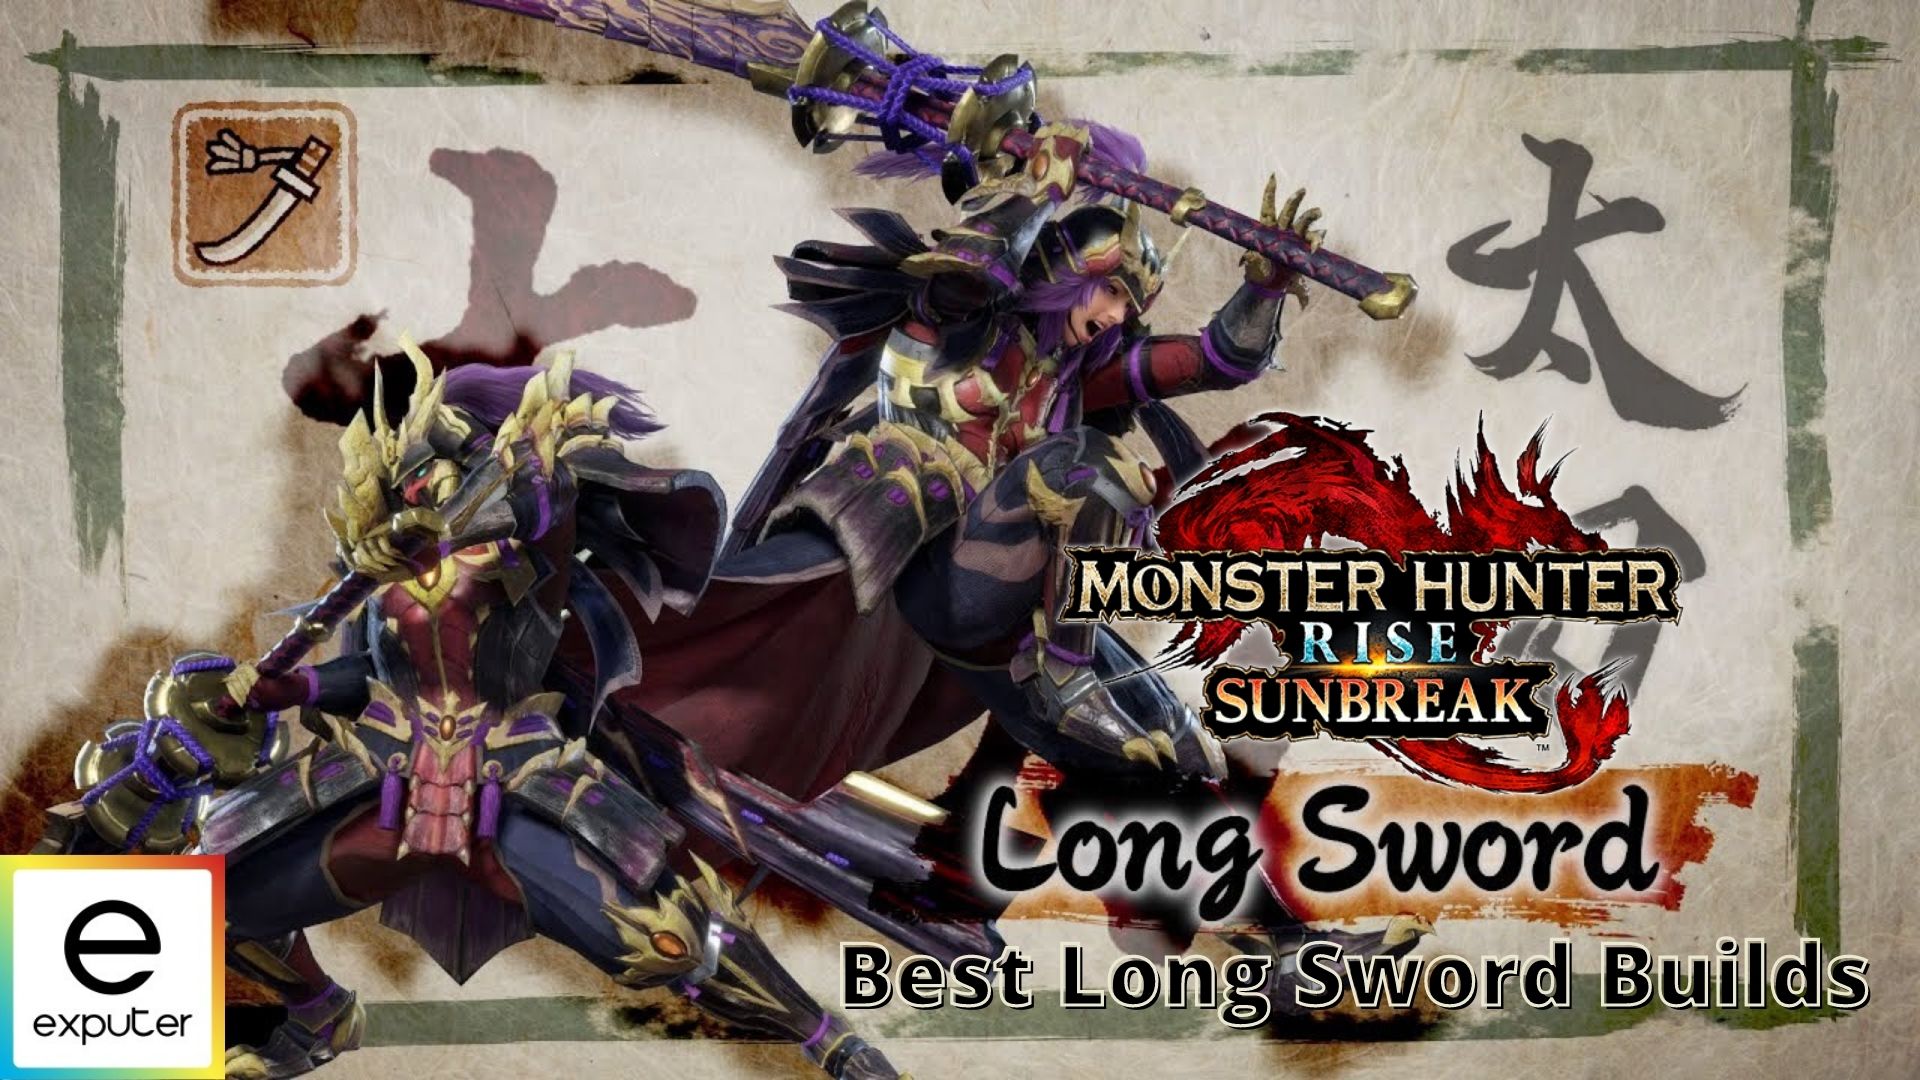 Long Sword builds list in Monster Hunter Rise Sunbreak